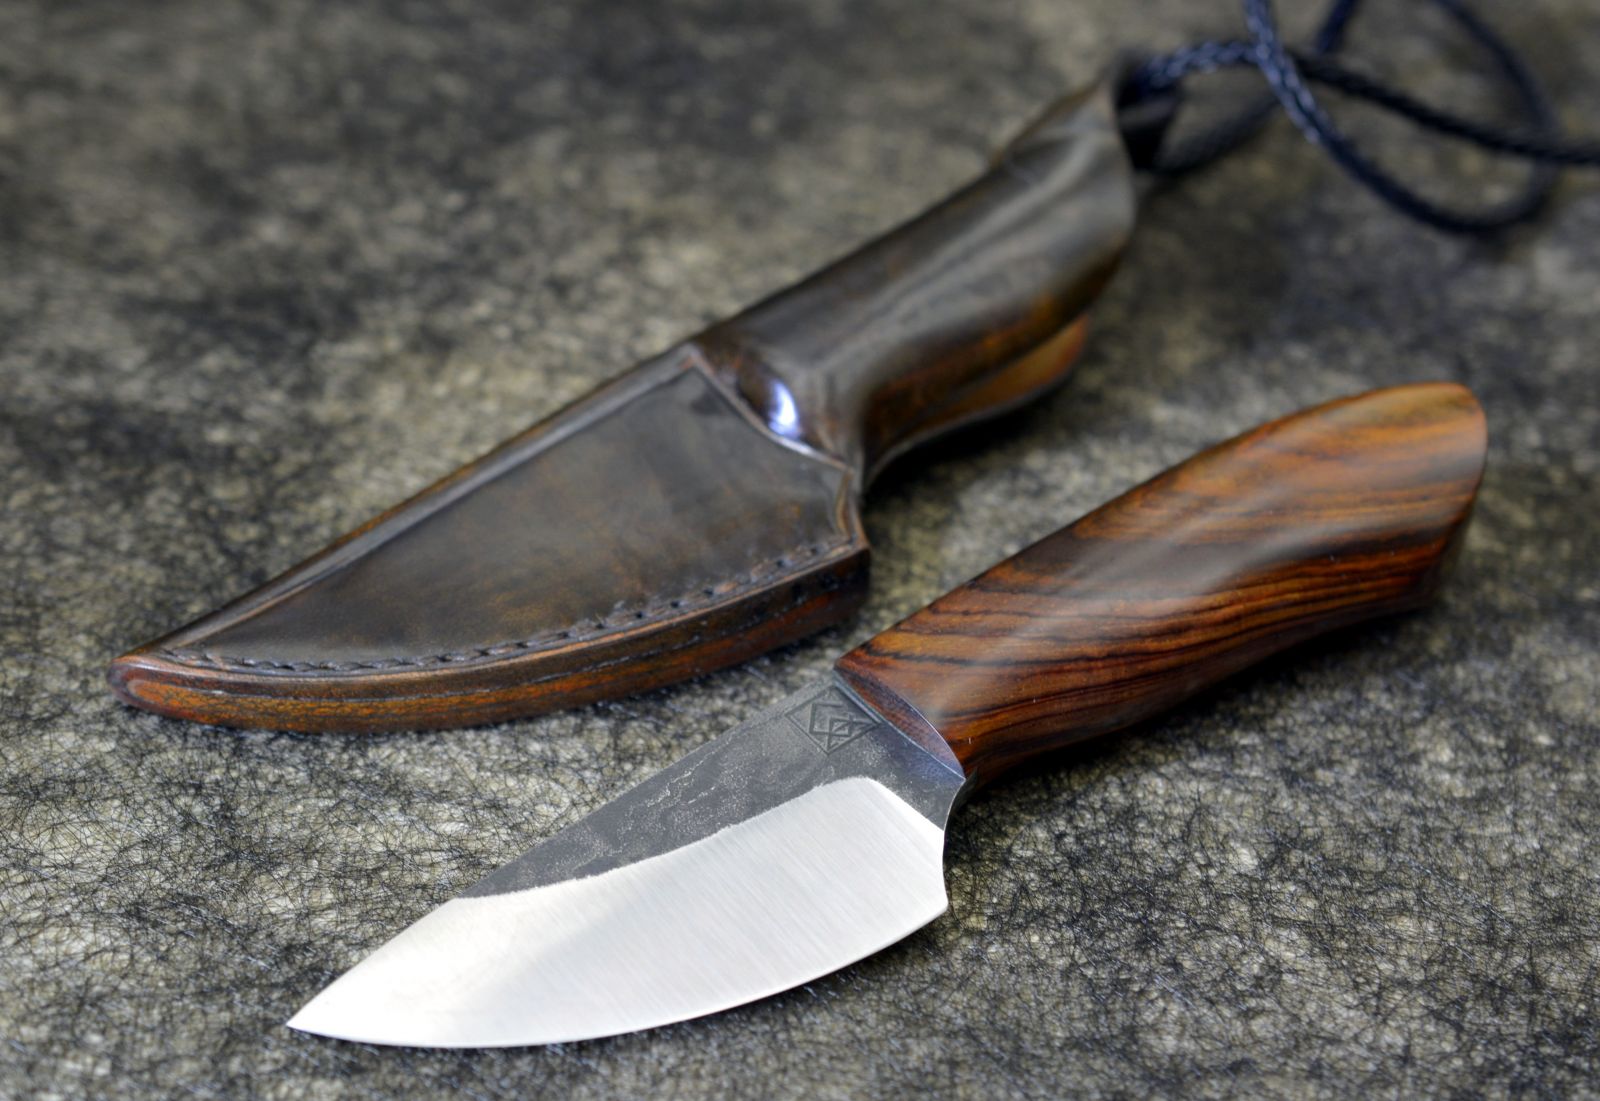 Лезвие охотничьего ножа. Нож "с17" (Elmax). Рукоять ножа Кокоболо. Нож шкуросъёмный шейник. Необычные формы ножей.